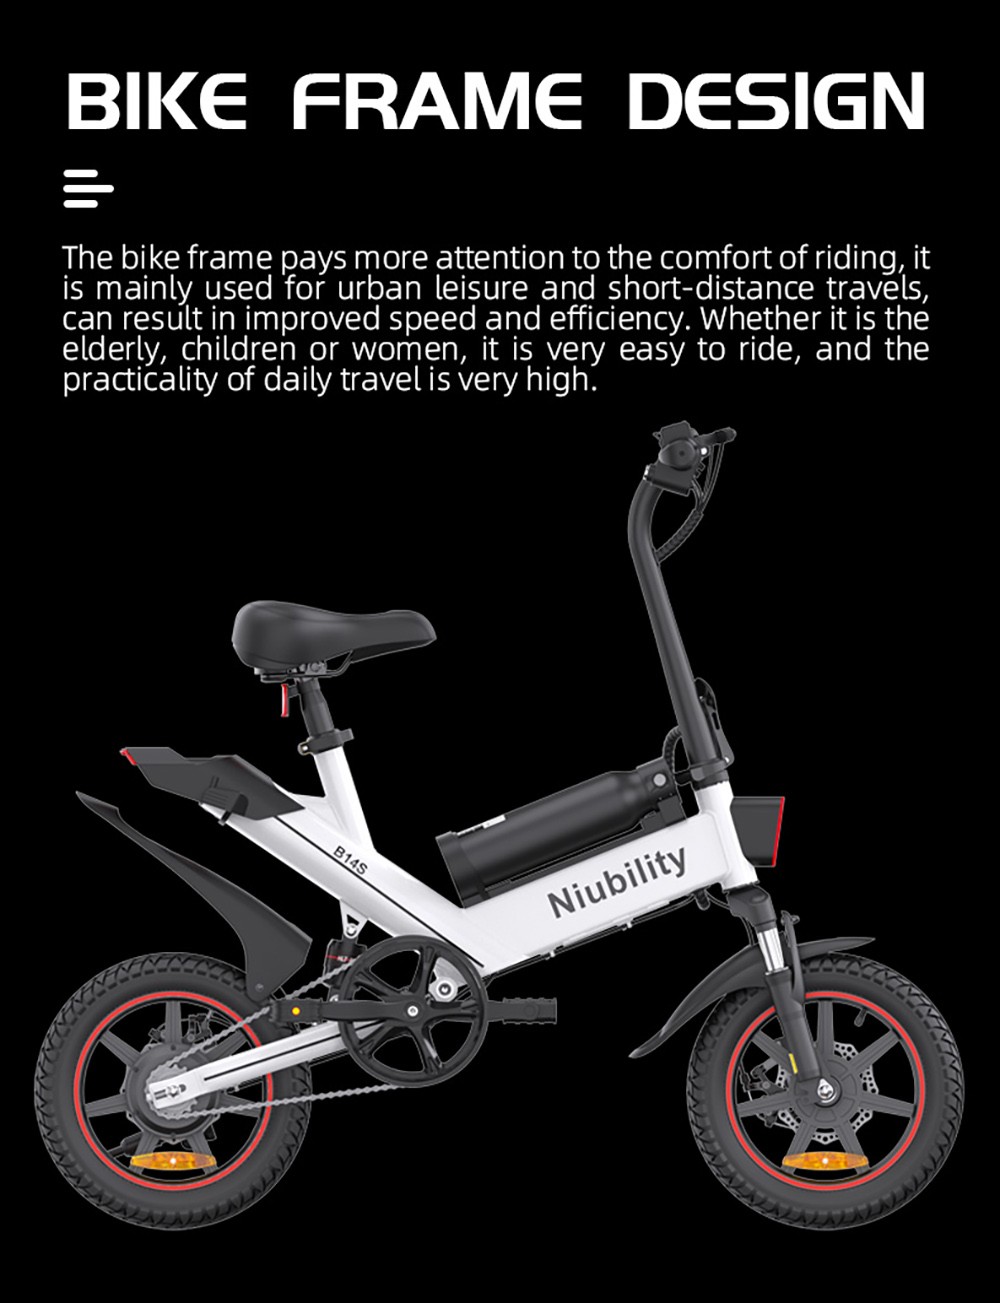 NIUBILITY B14S Electric Bike 14*2.125 inch Tire 48V 400W Motor 32km/h Max Speed 8.7Ah + 6.4Ah Dvojitá batéria Dvojitá kotúčová brzda - čierna